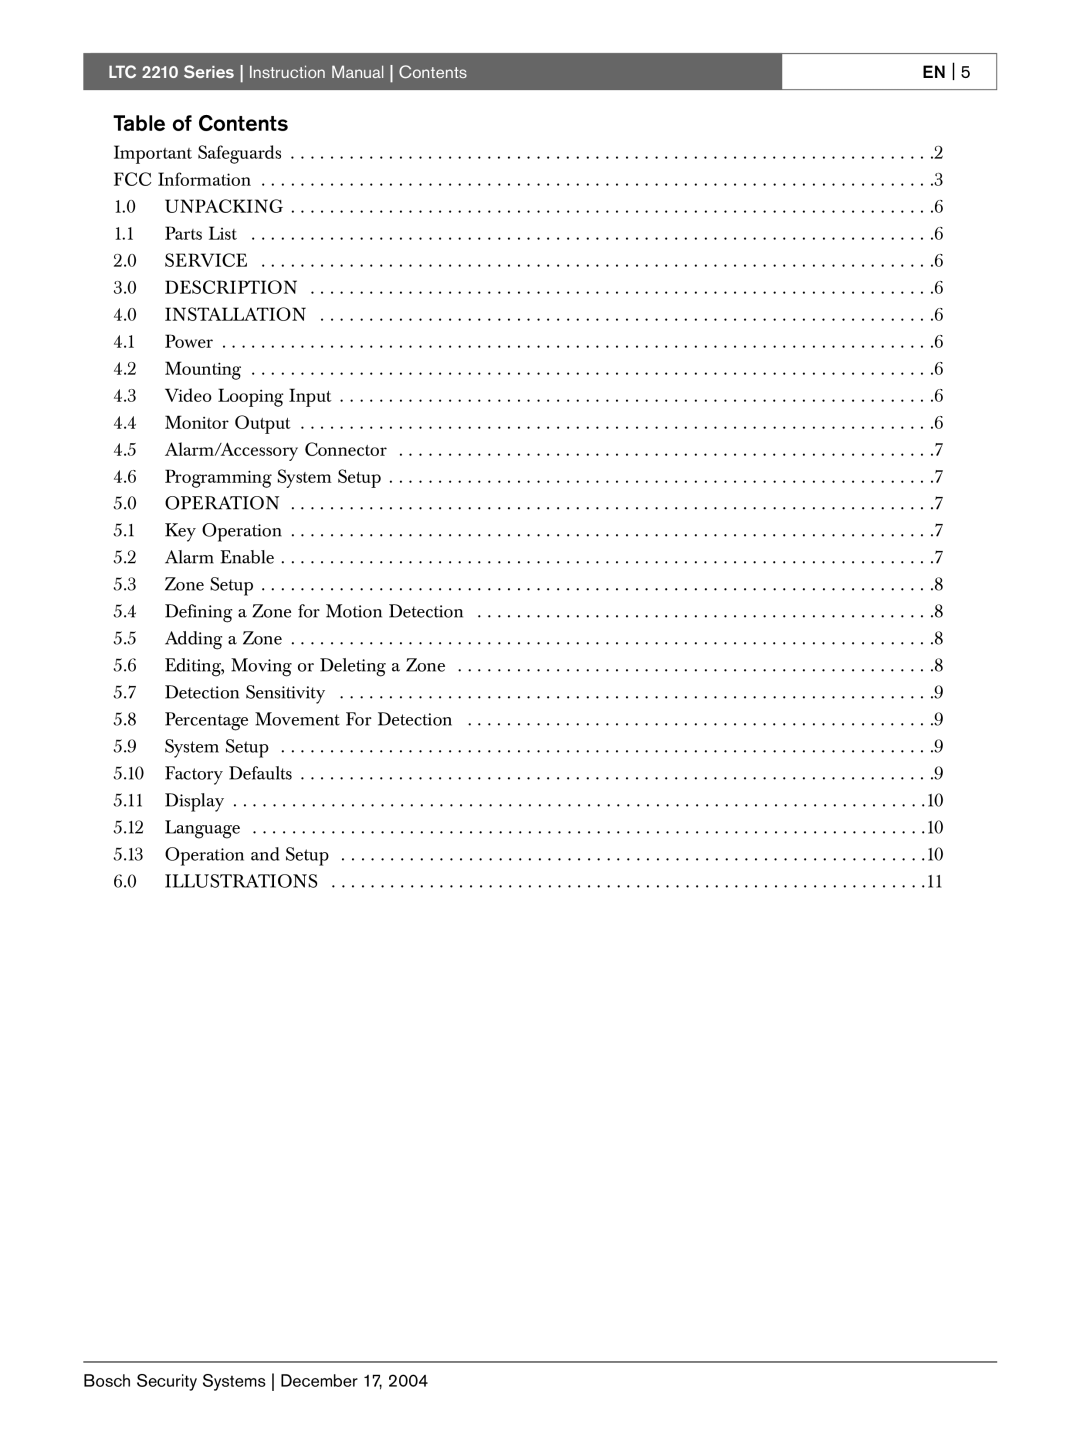 Bosch Appliances LTC 2210 instruction manual Table of Contents, En 